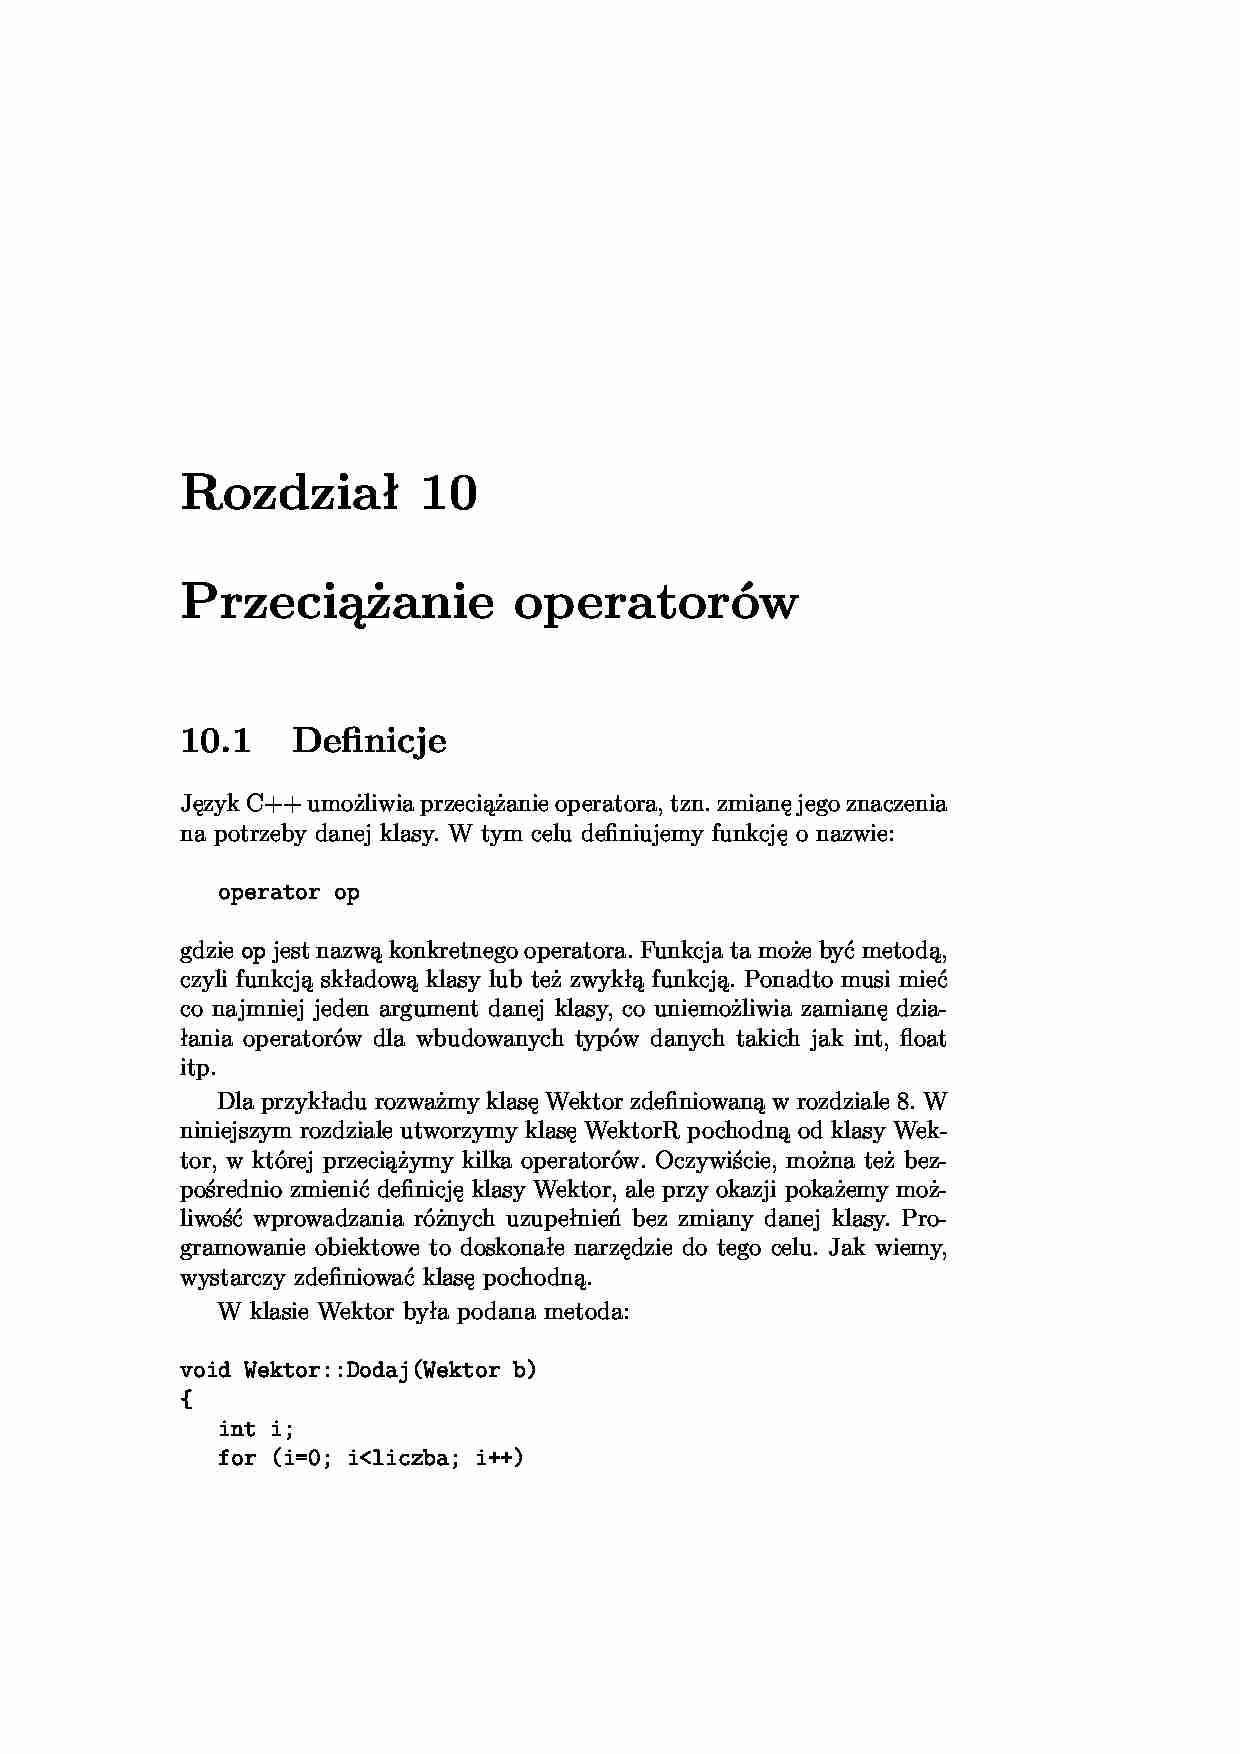 Programowanie obiektowe - przeciążanie operatorów. - strona 1